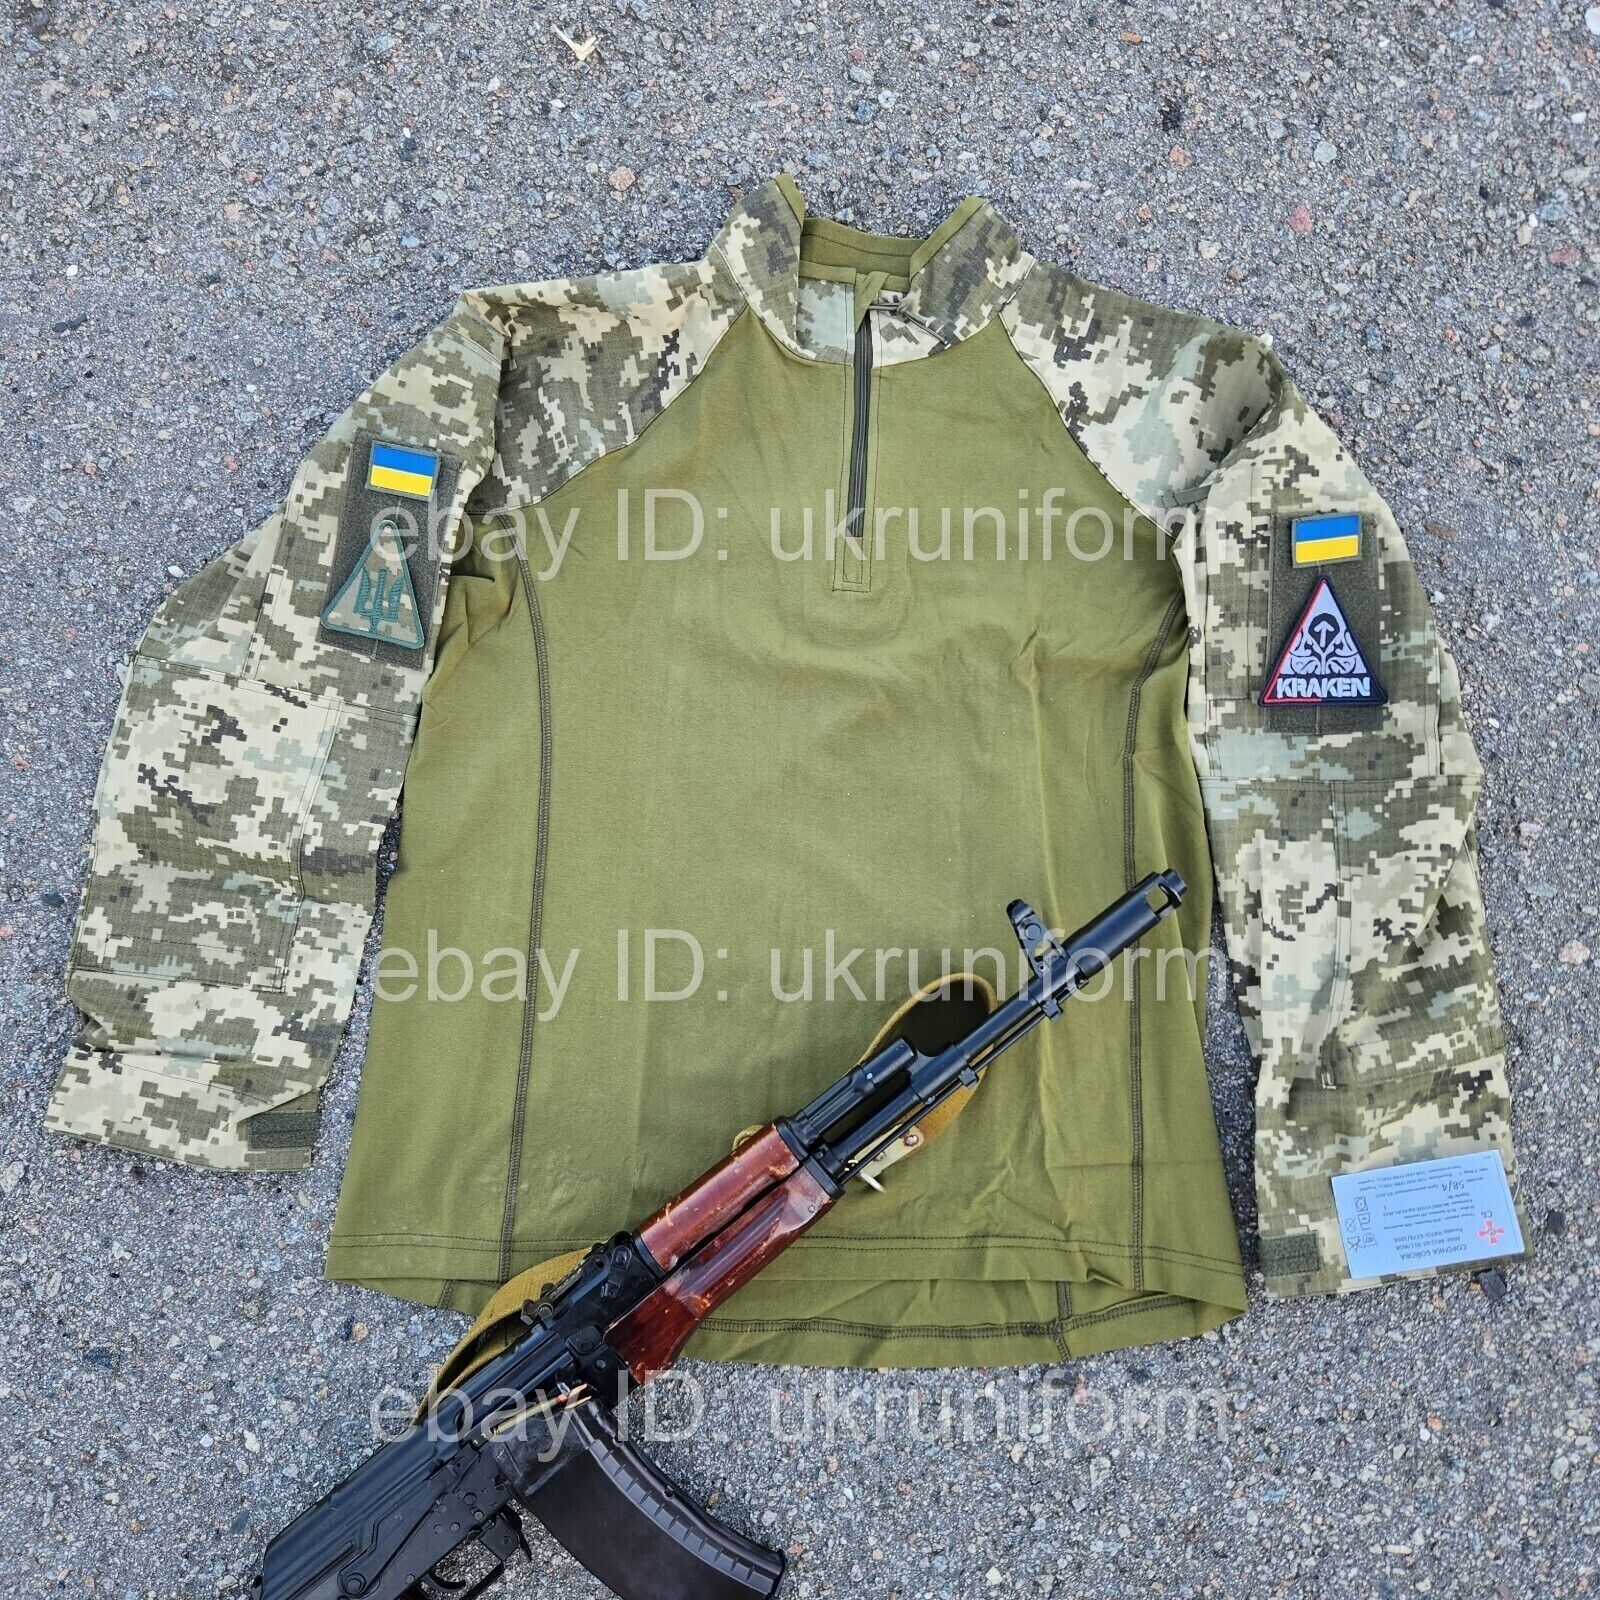 Uniform Ukraine Army PIXEL CAMO COMBAT SHIRT Ukrainian W A R TAG S-XXXXL